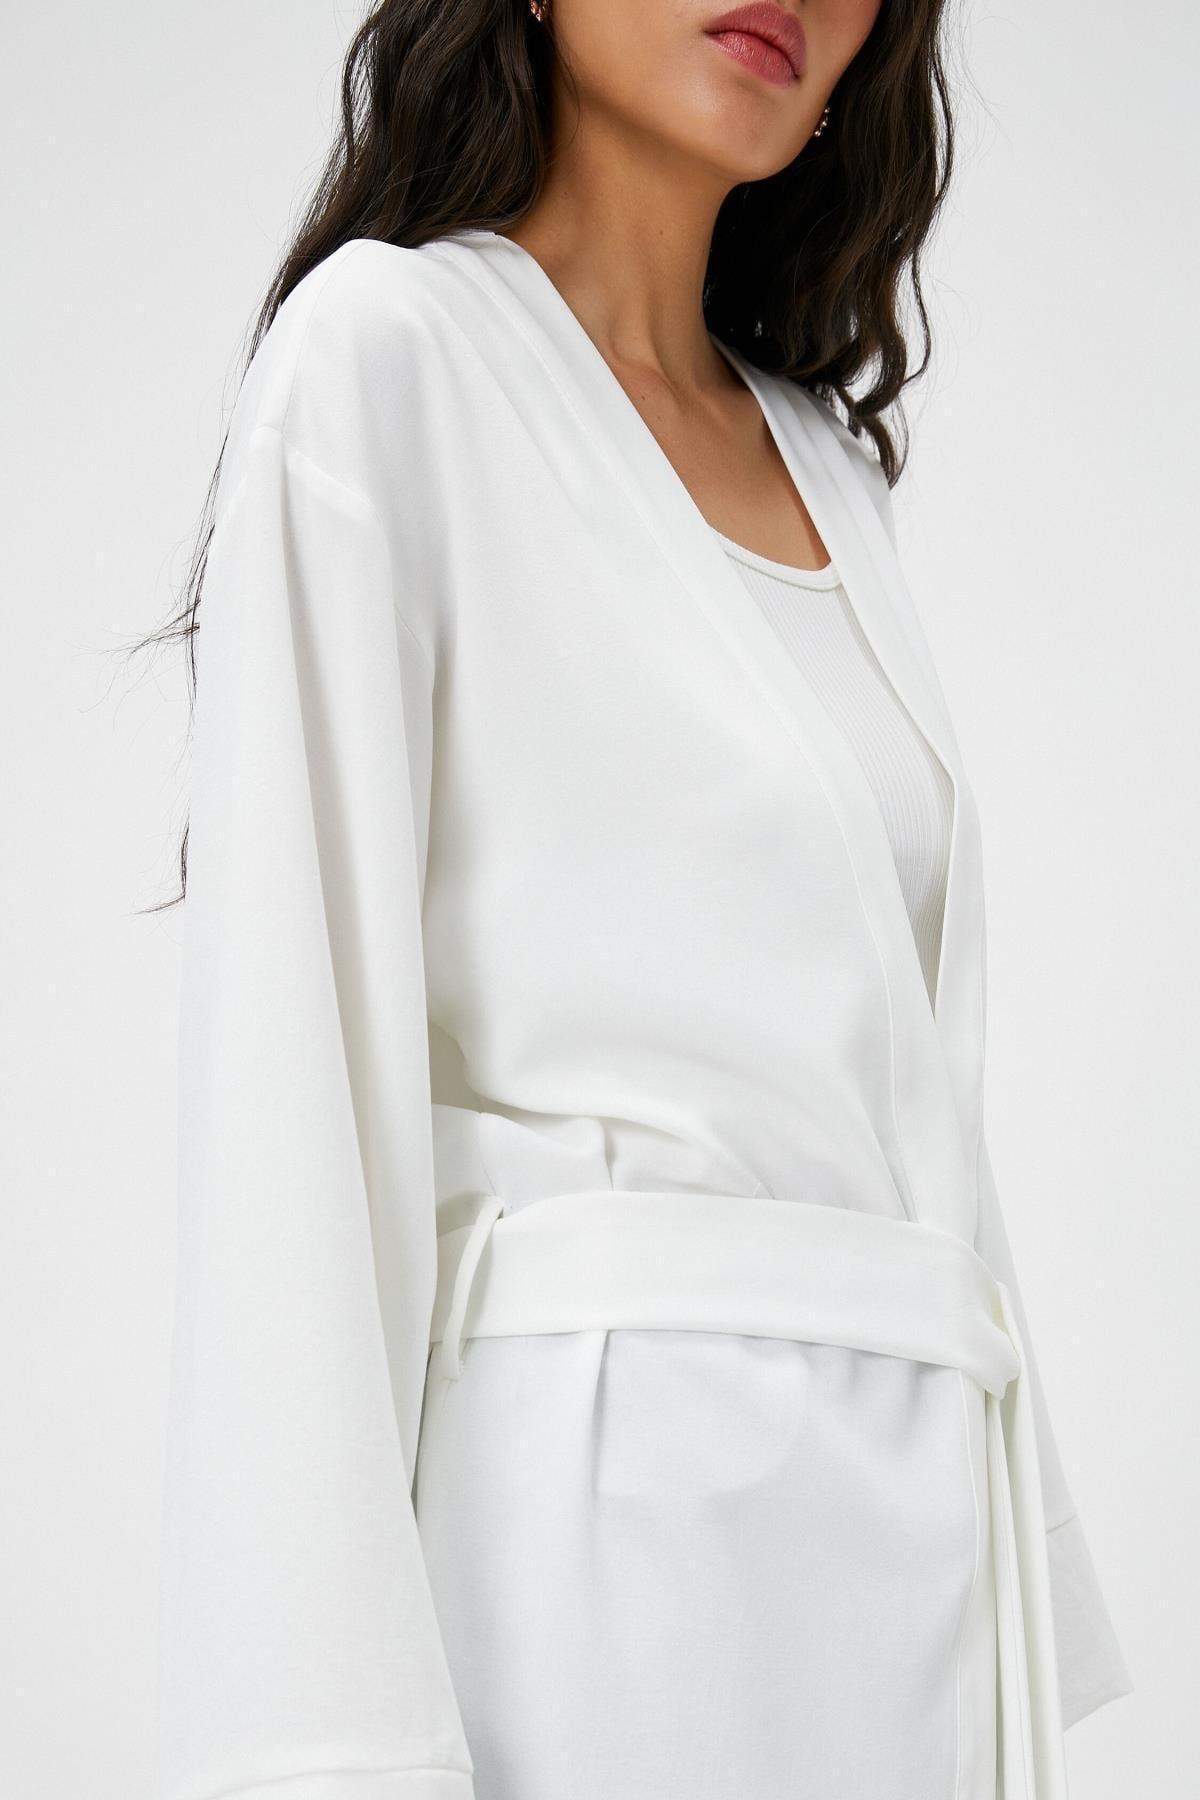 Koton - White Collared Jacket